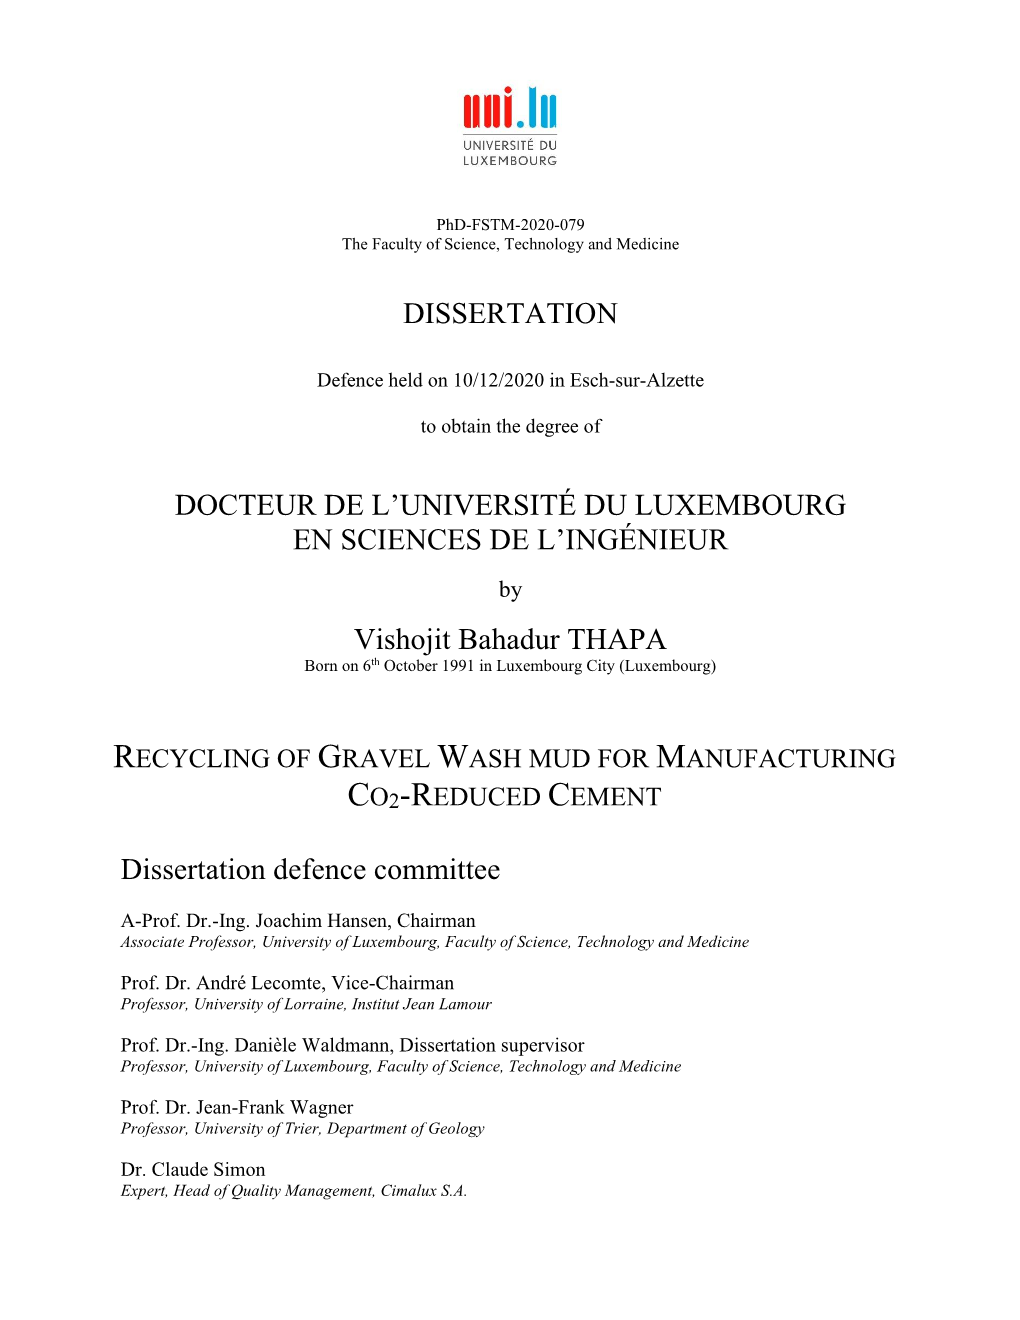 Dissertation Docteur De L'université Du Luxembourg